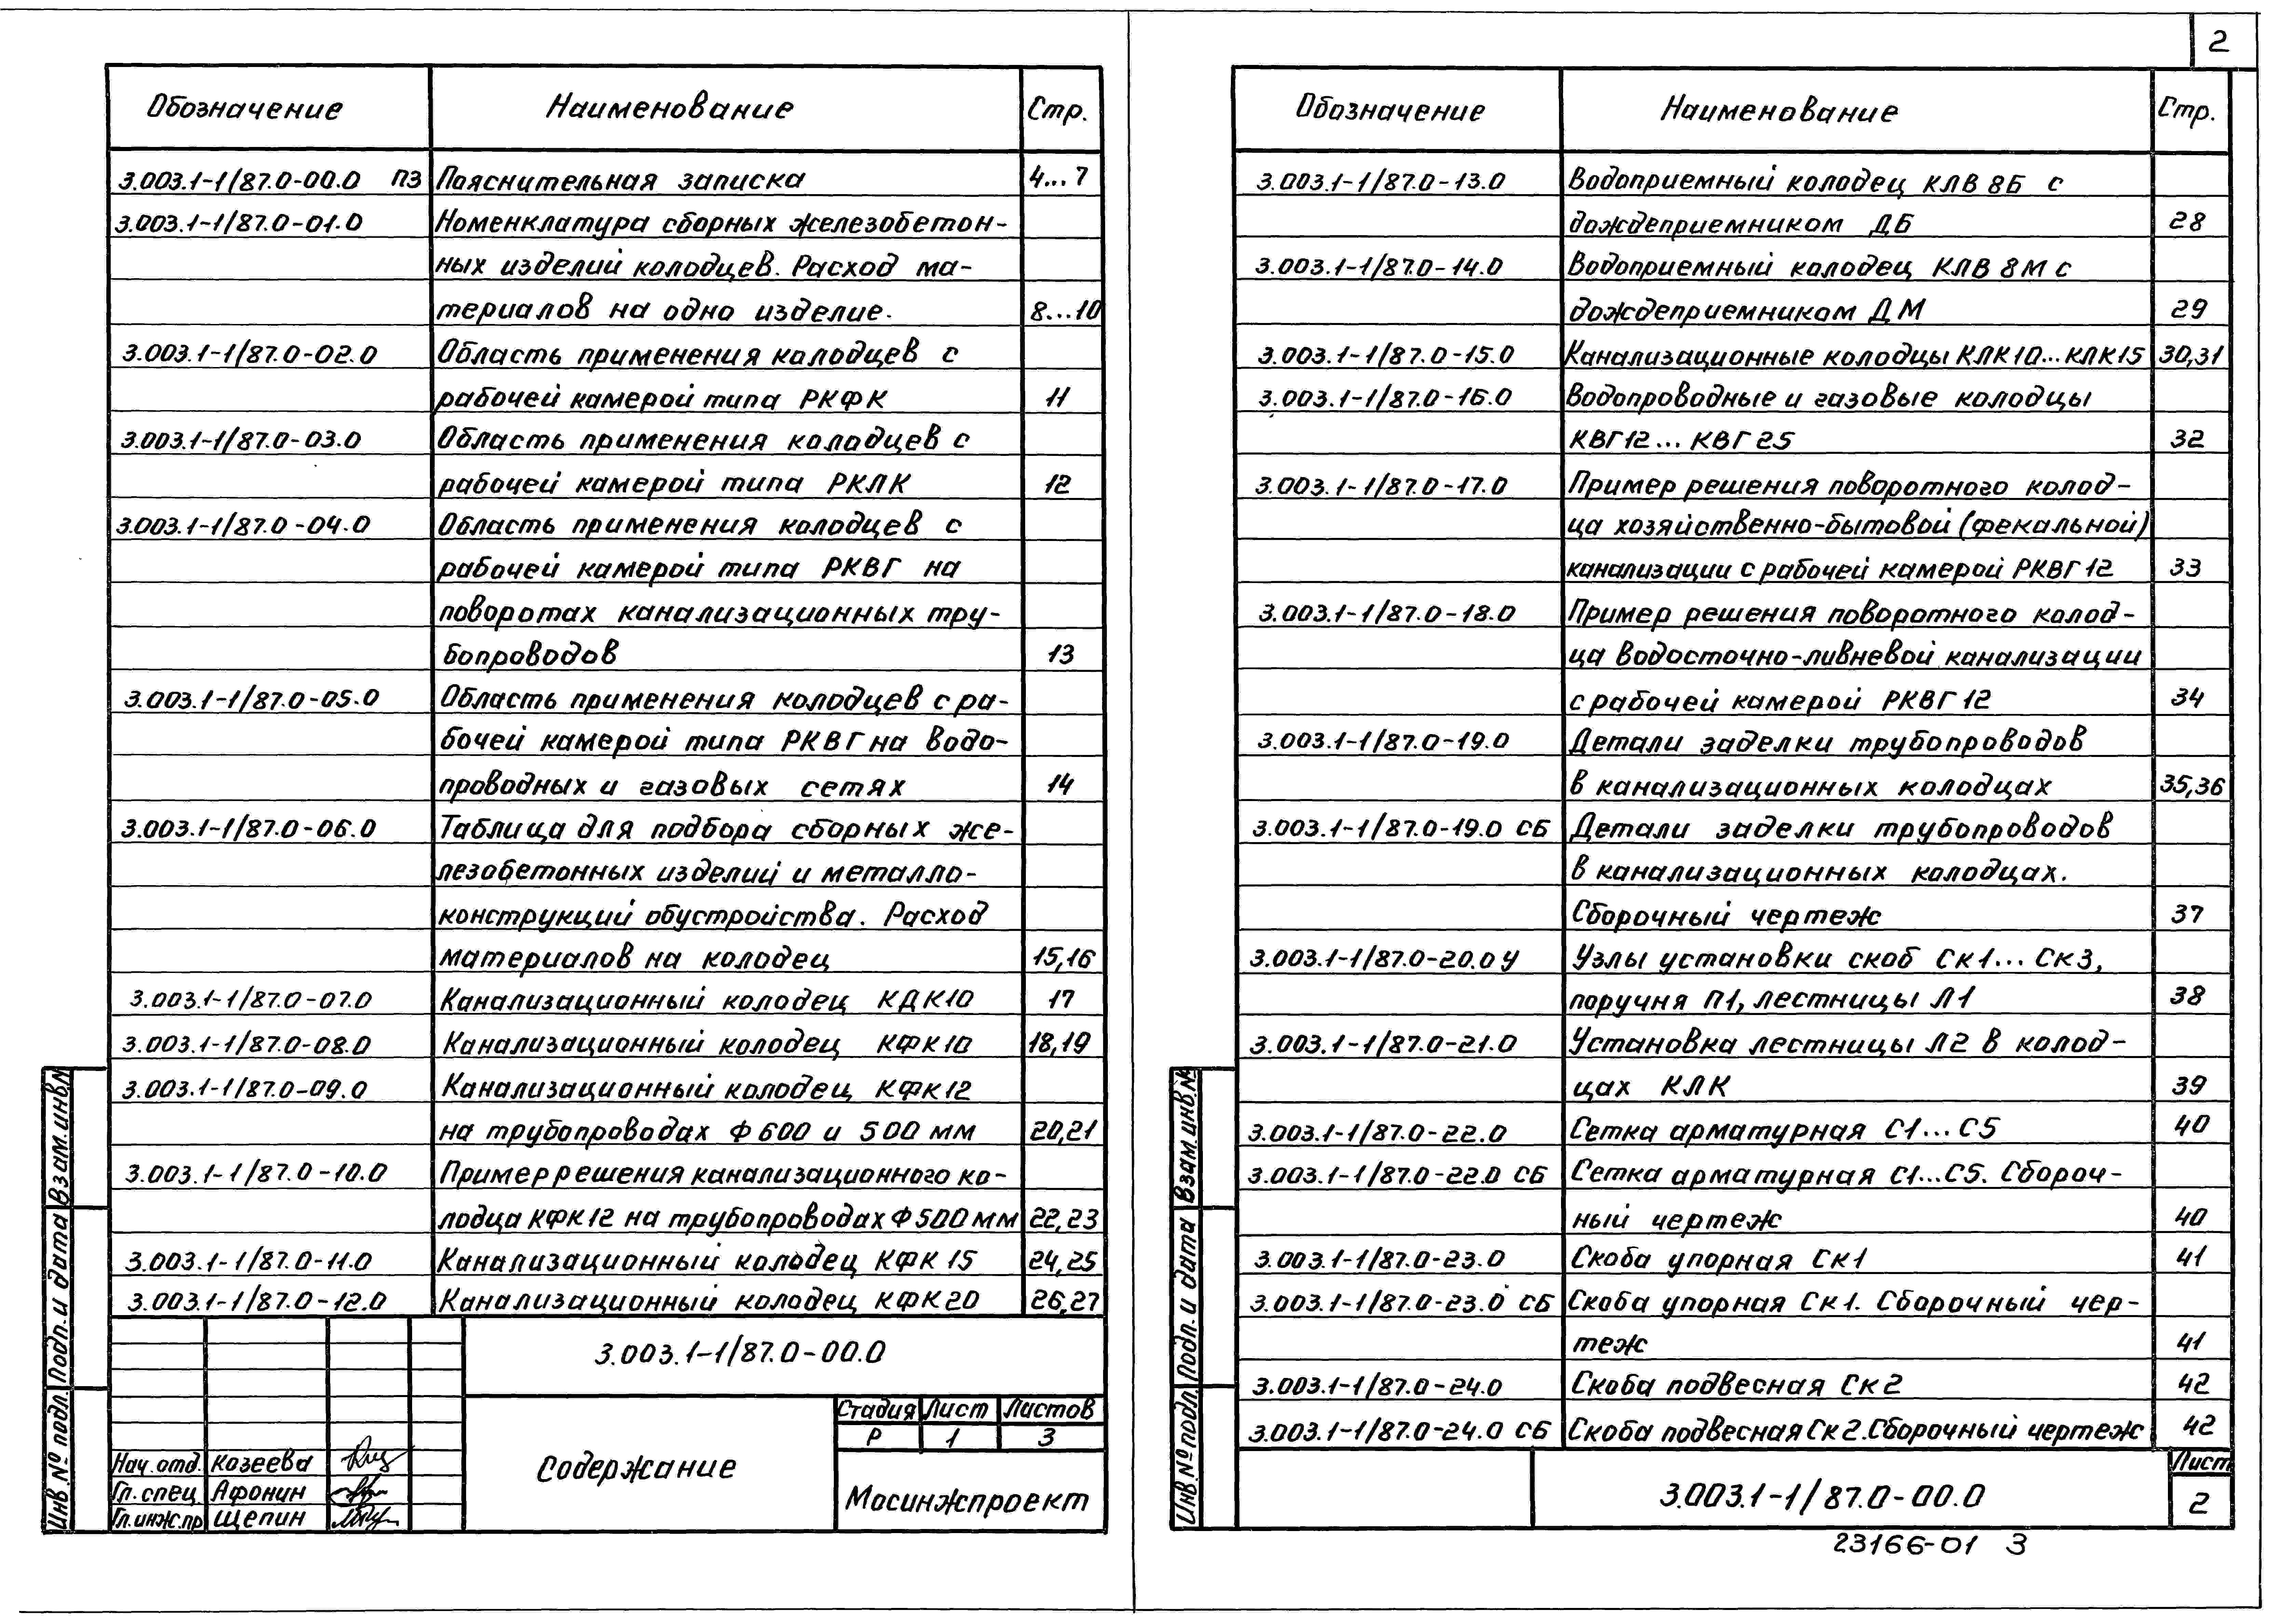 Состав альбома Серия 3.003.1-1/87 СборныеВыпуск 0 Материалы для проектирования 